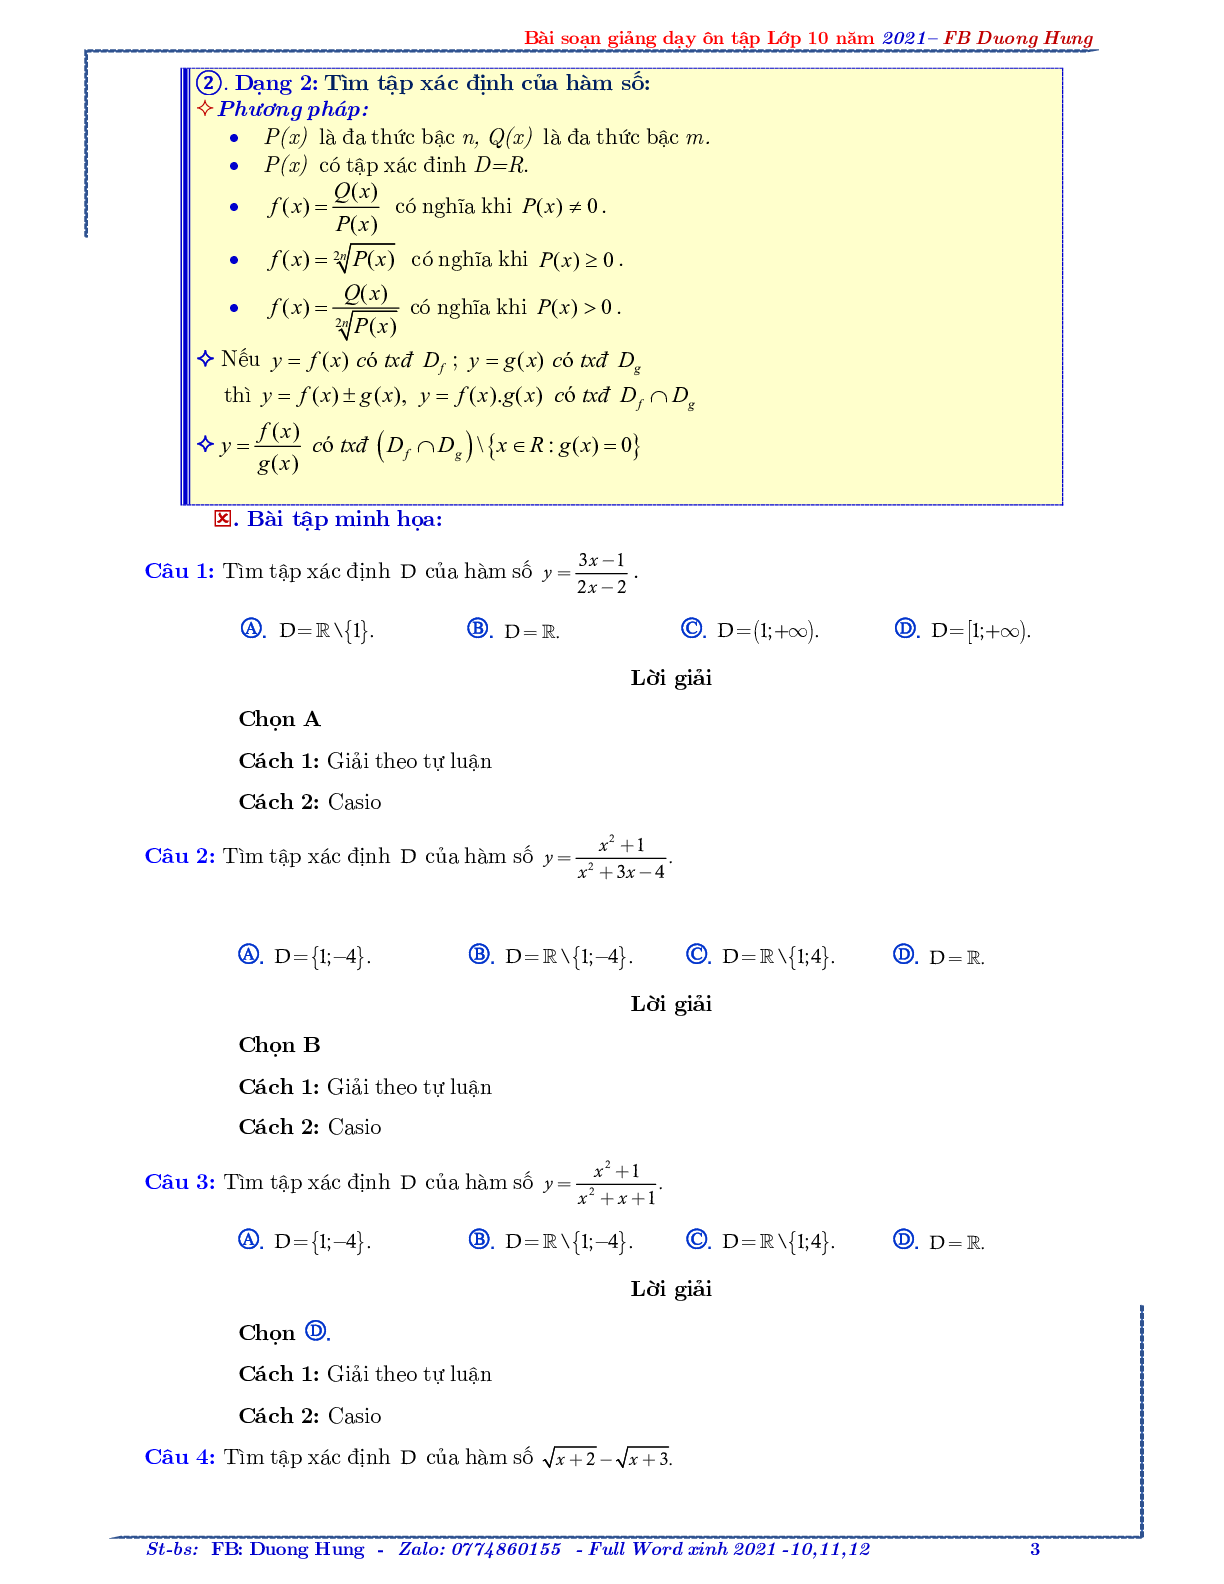 Chuyên đề về hàm số bậc nhất và bậc hai - bản 1 (trang 3)